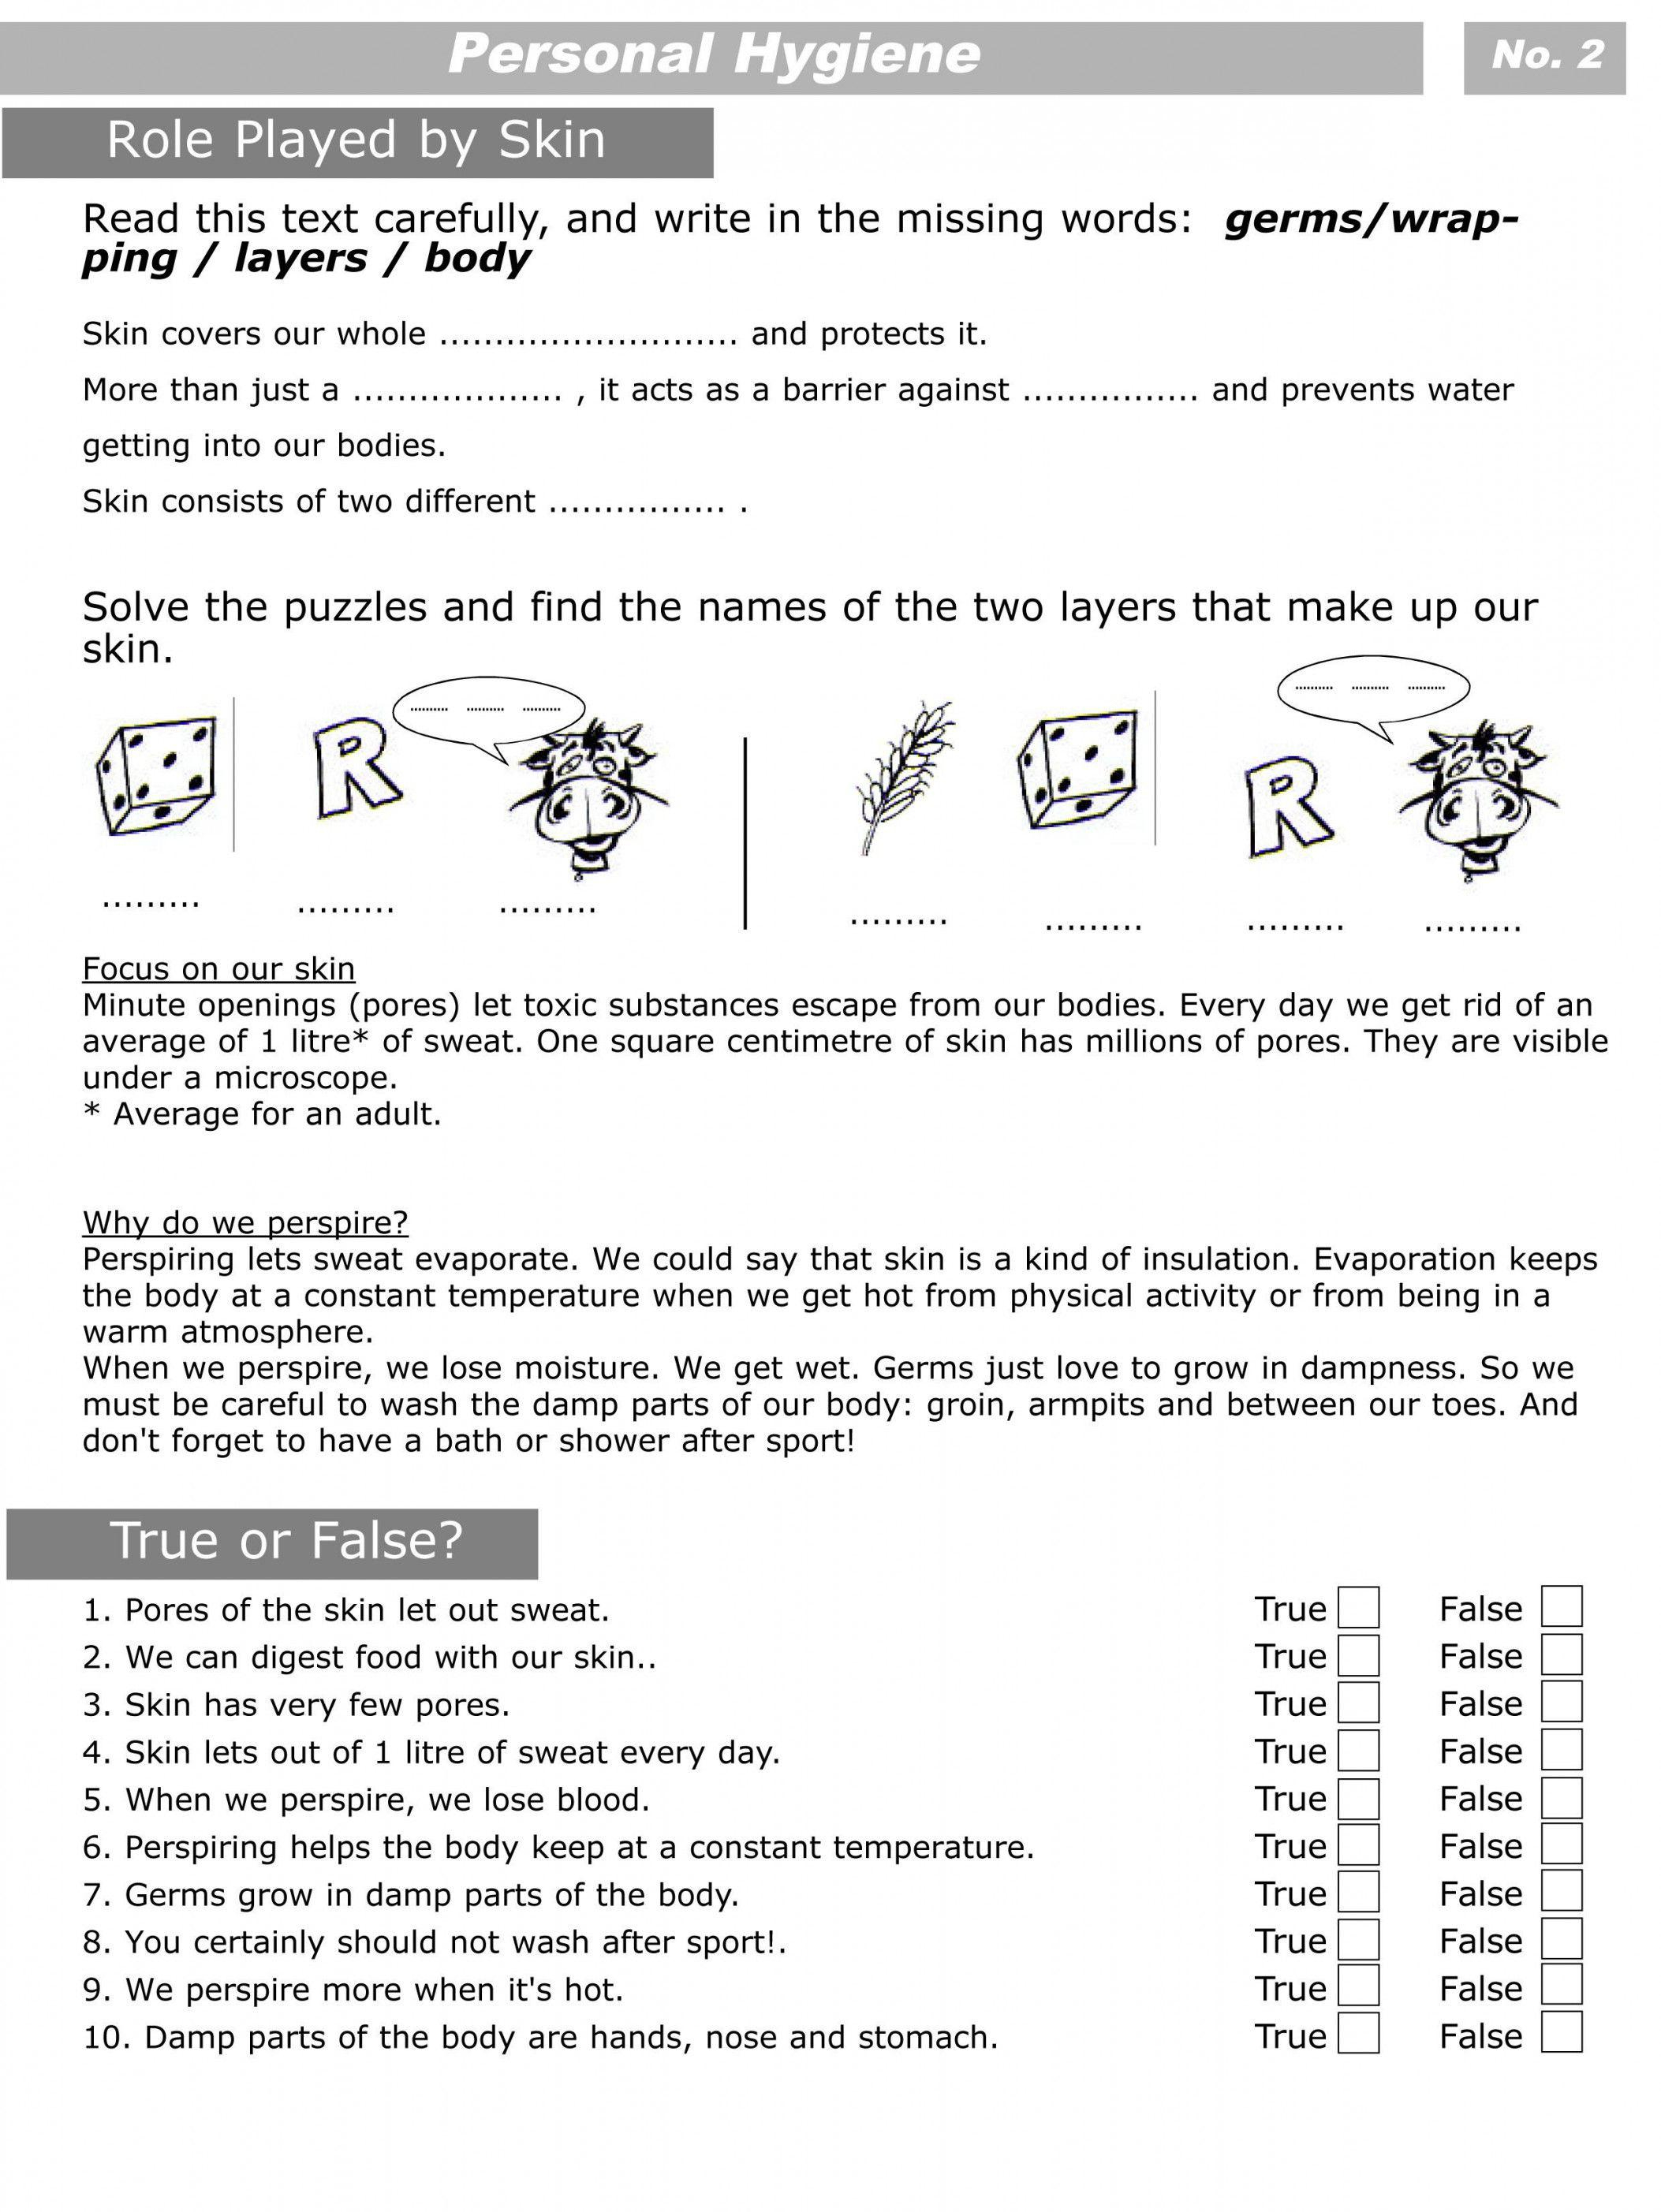 Free Printable Personal Hygiene Worksheets | Lostranquillos - Free Printable Personal Hygiene Worksheets